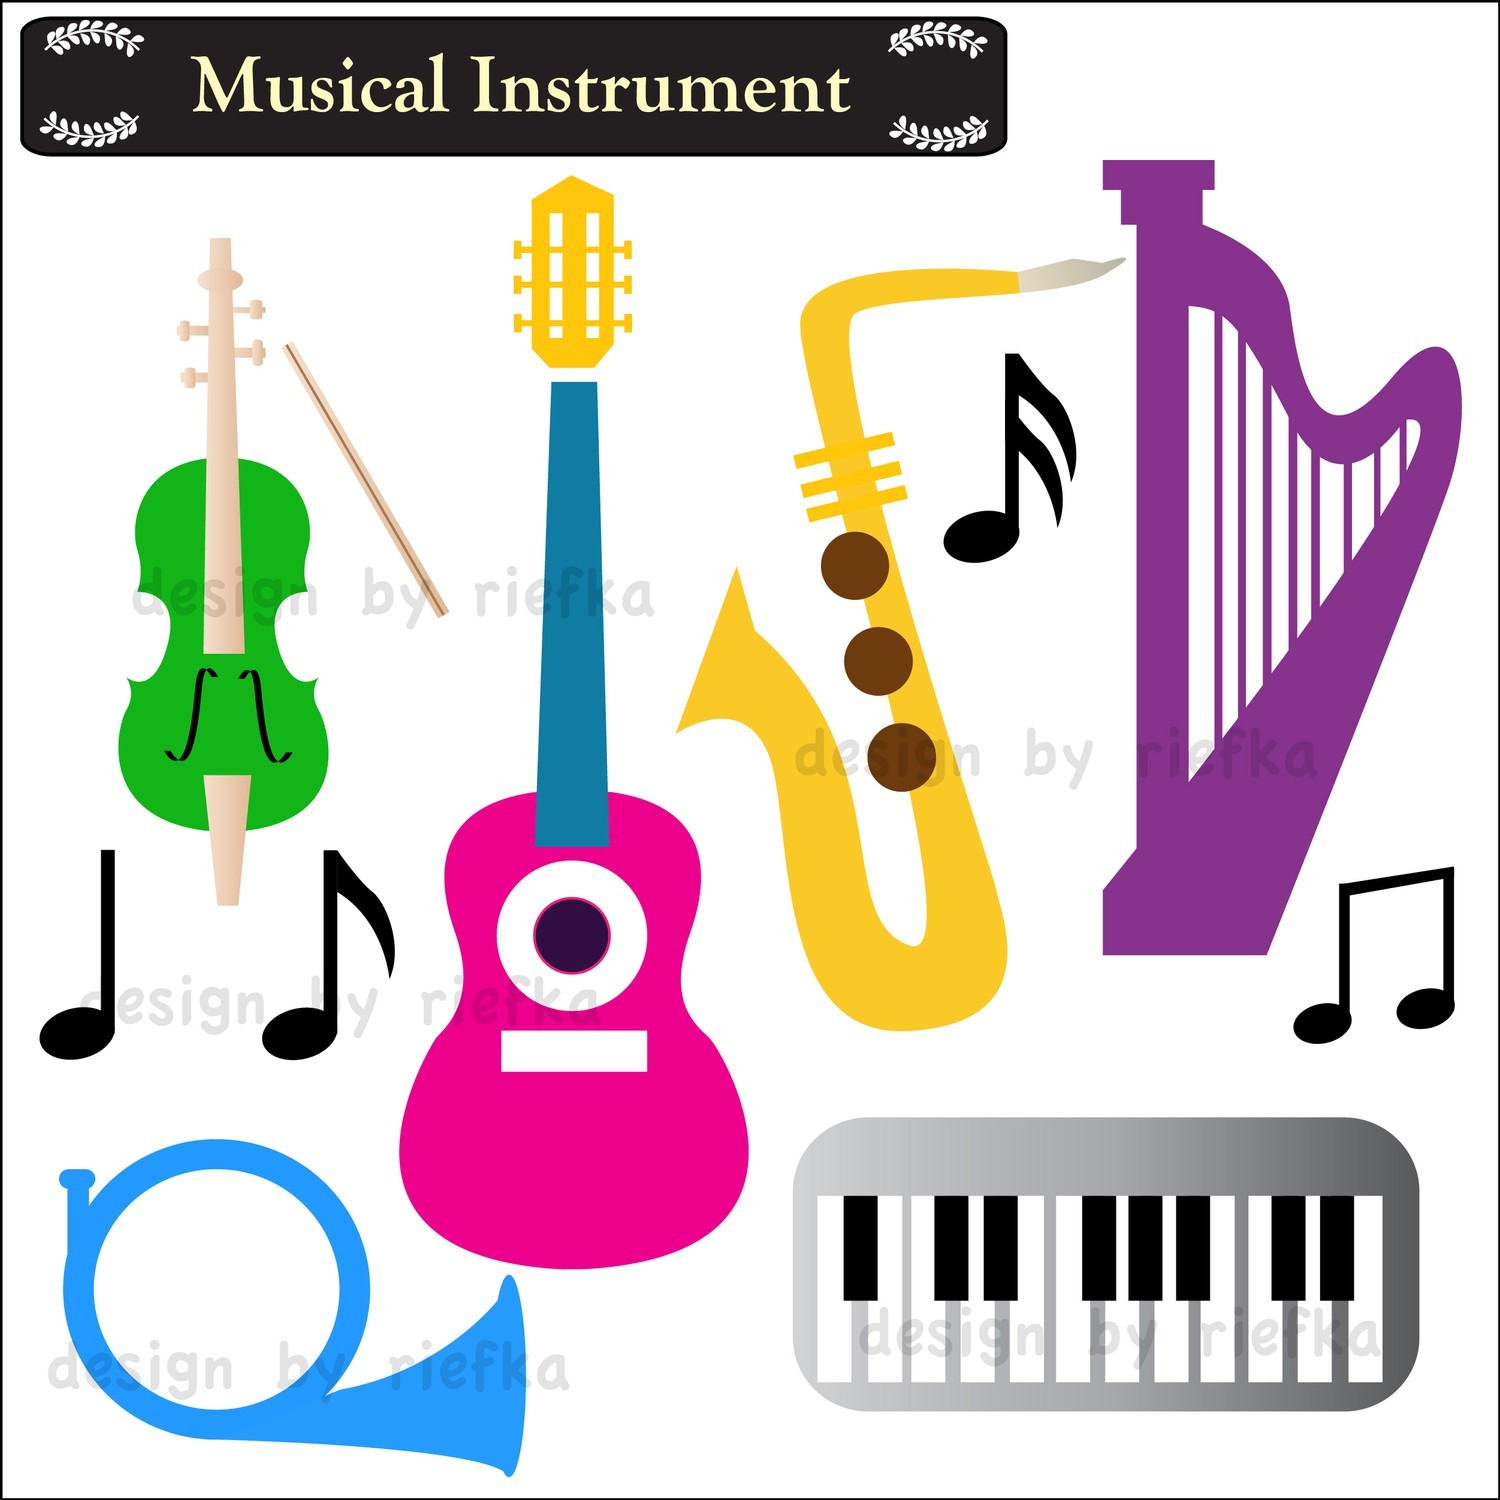 Musical Instrument Clip Art. $5.00, via Etsy..